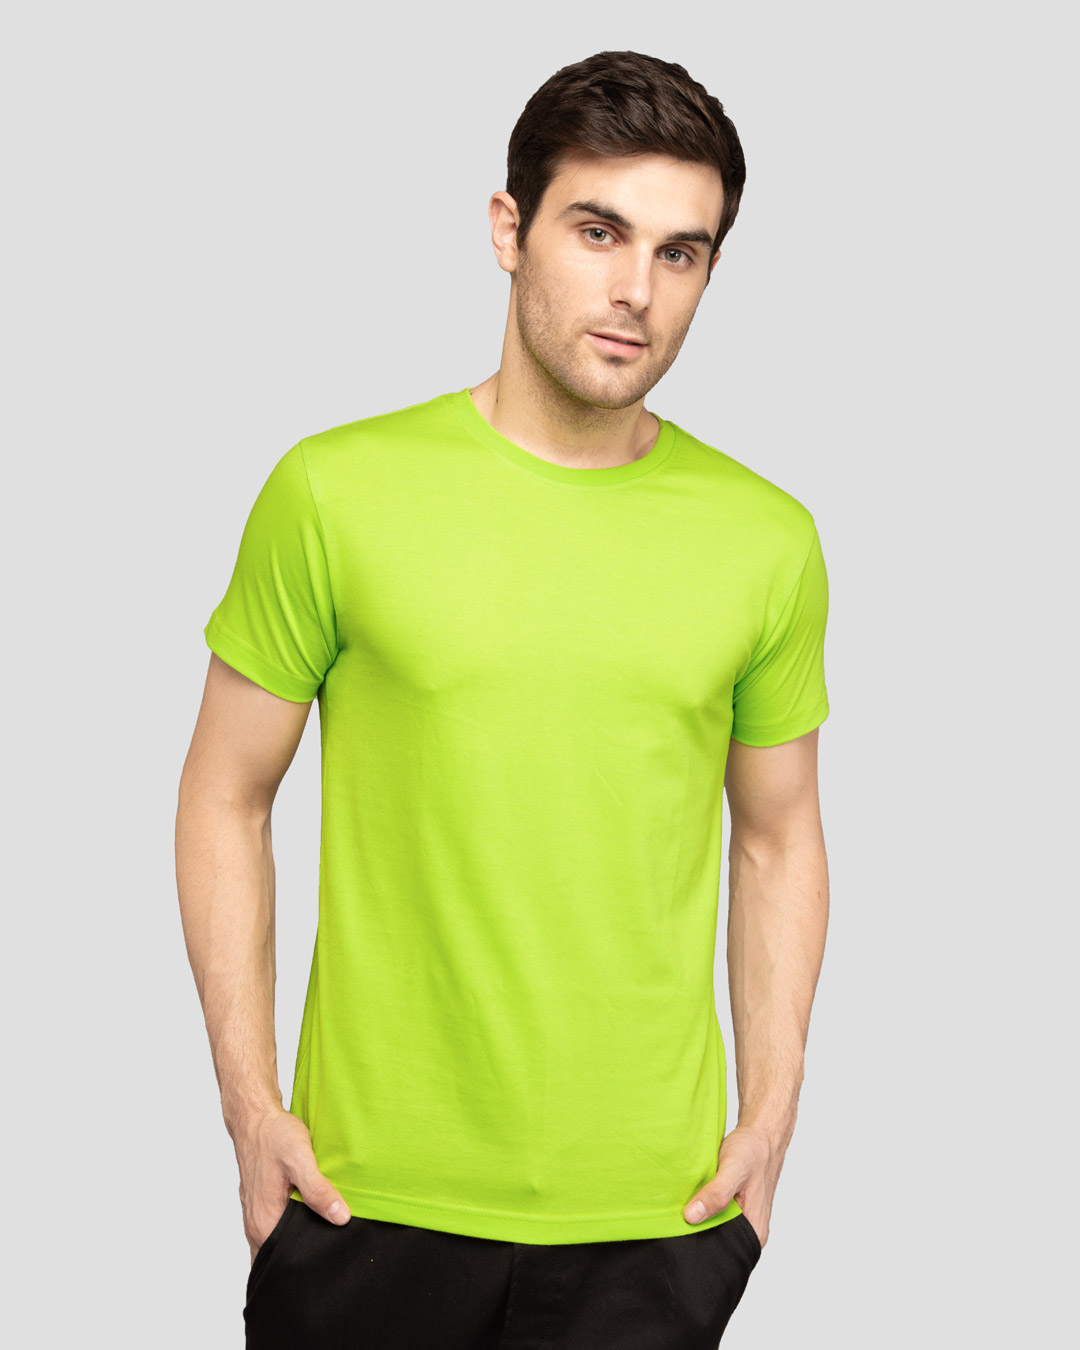 Buy Neon Green Half Sleeve T Shirt For Men Green Online At Bewakoof